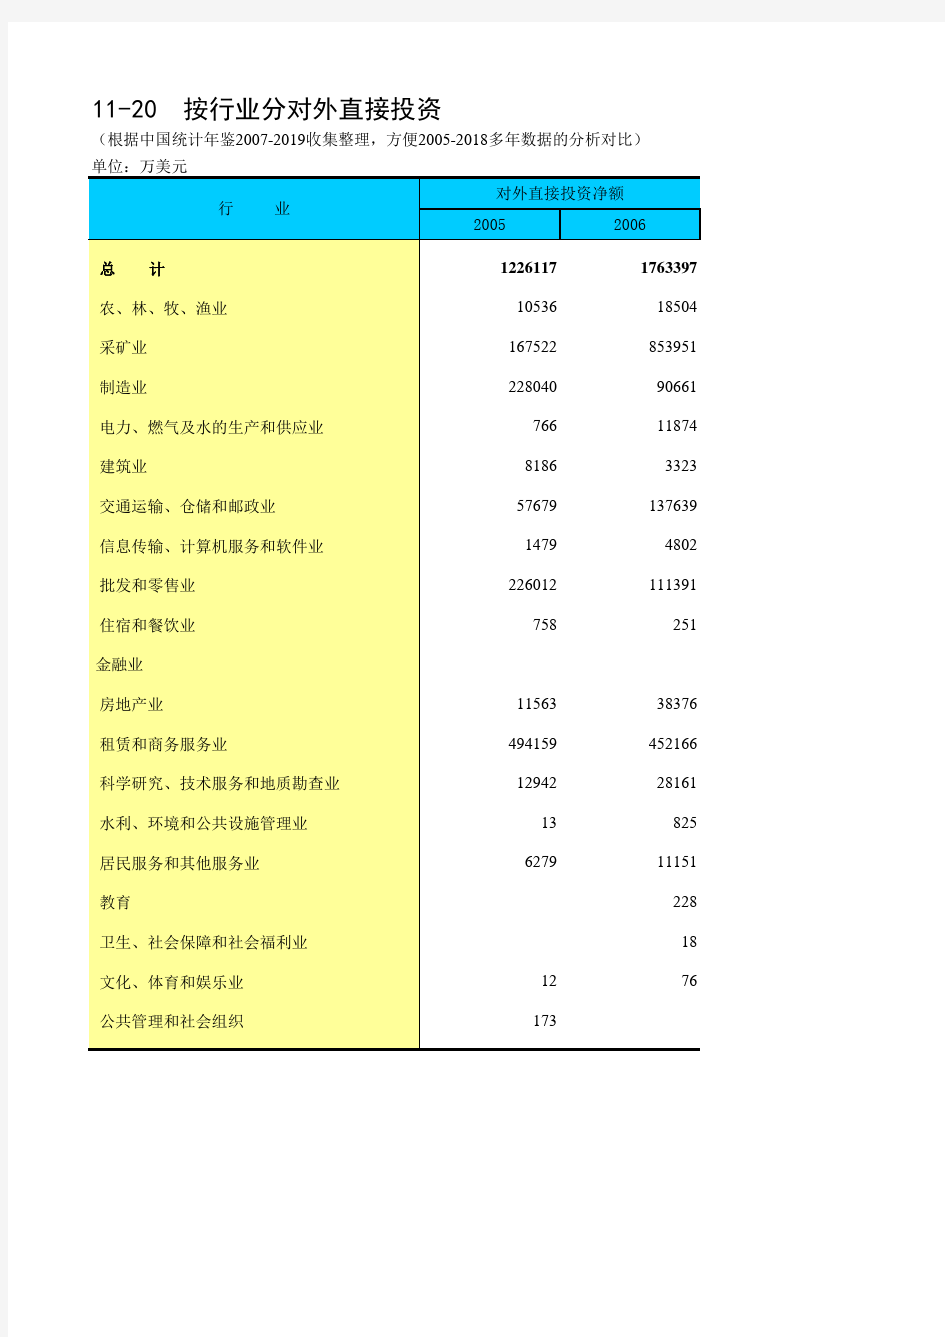 11-20 中国统计年鉴数据处理：按行业分对外直接投资(仅全国指标,便于2005-2018多年数据分析对比)